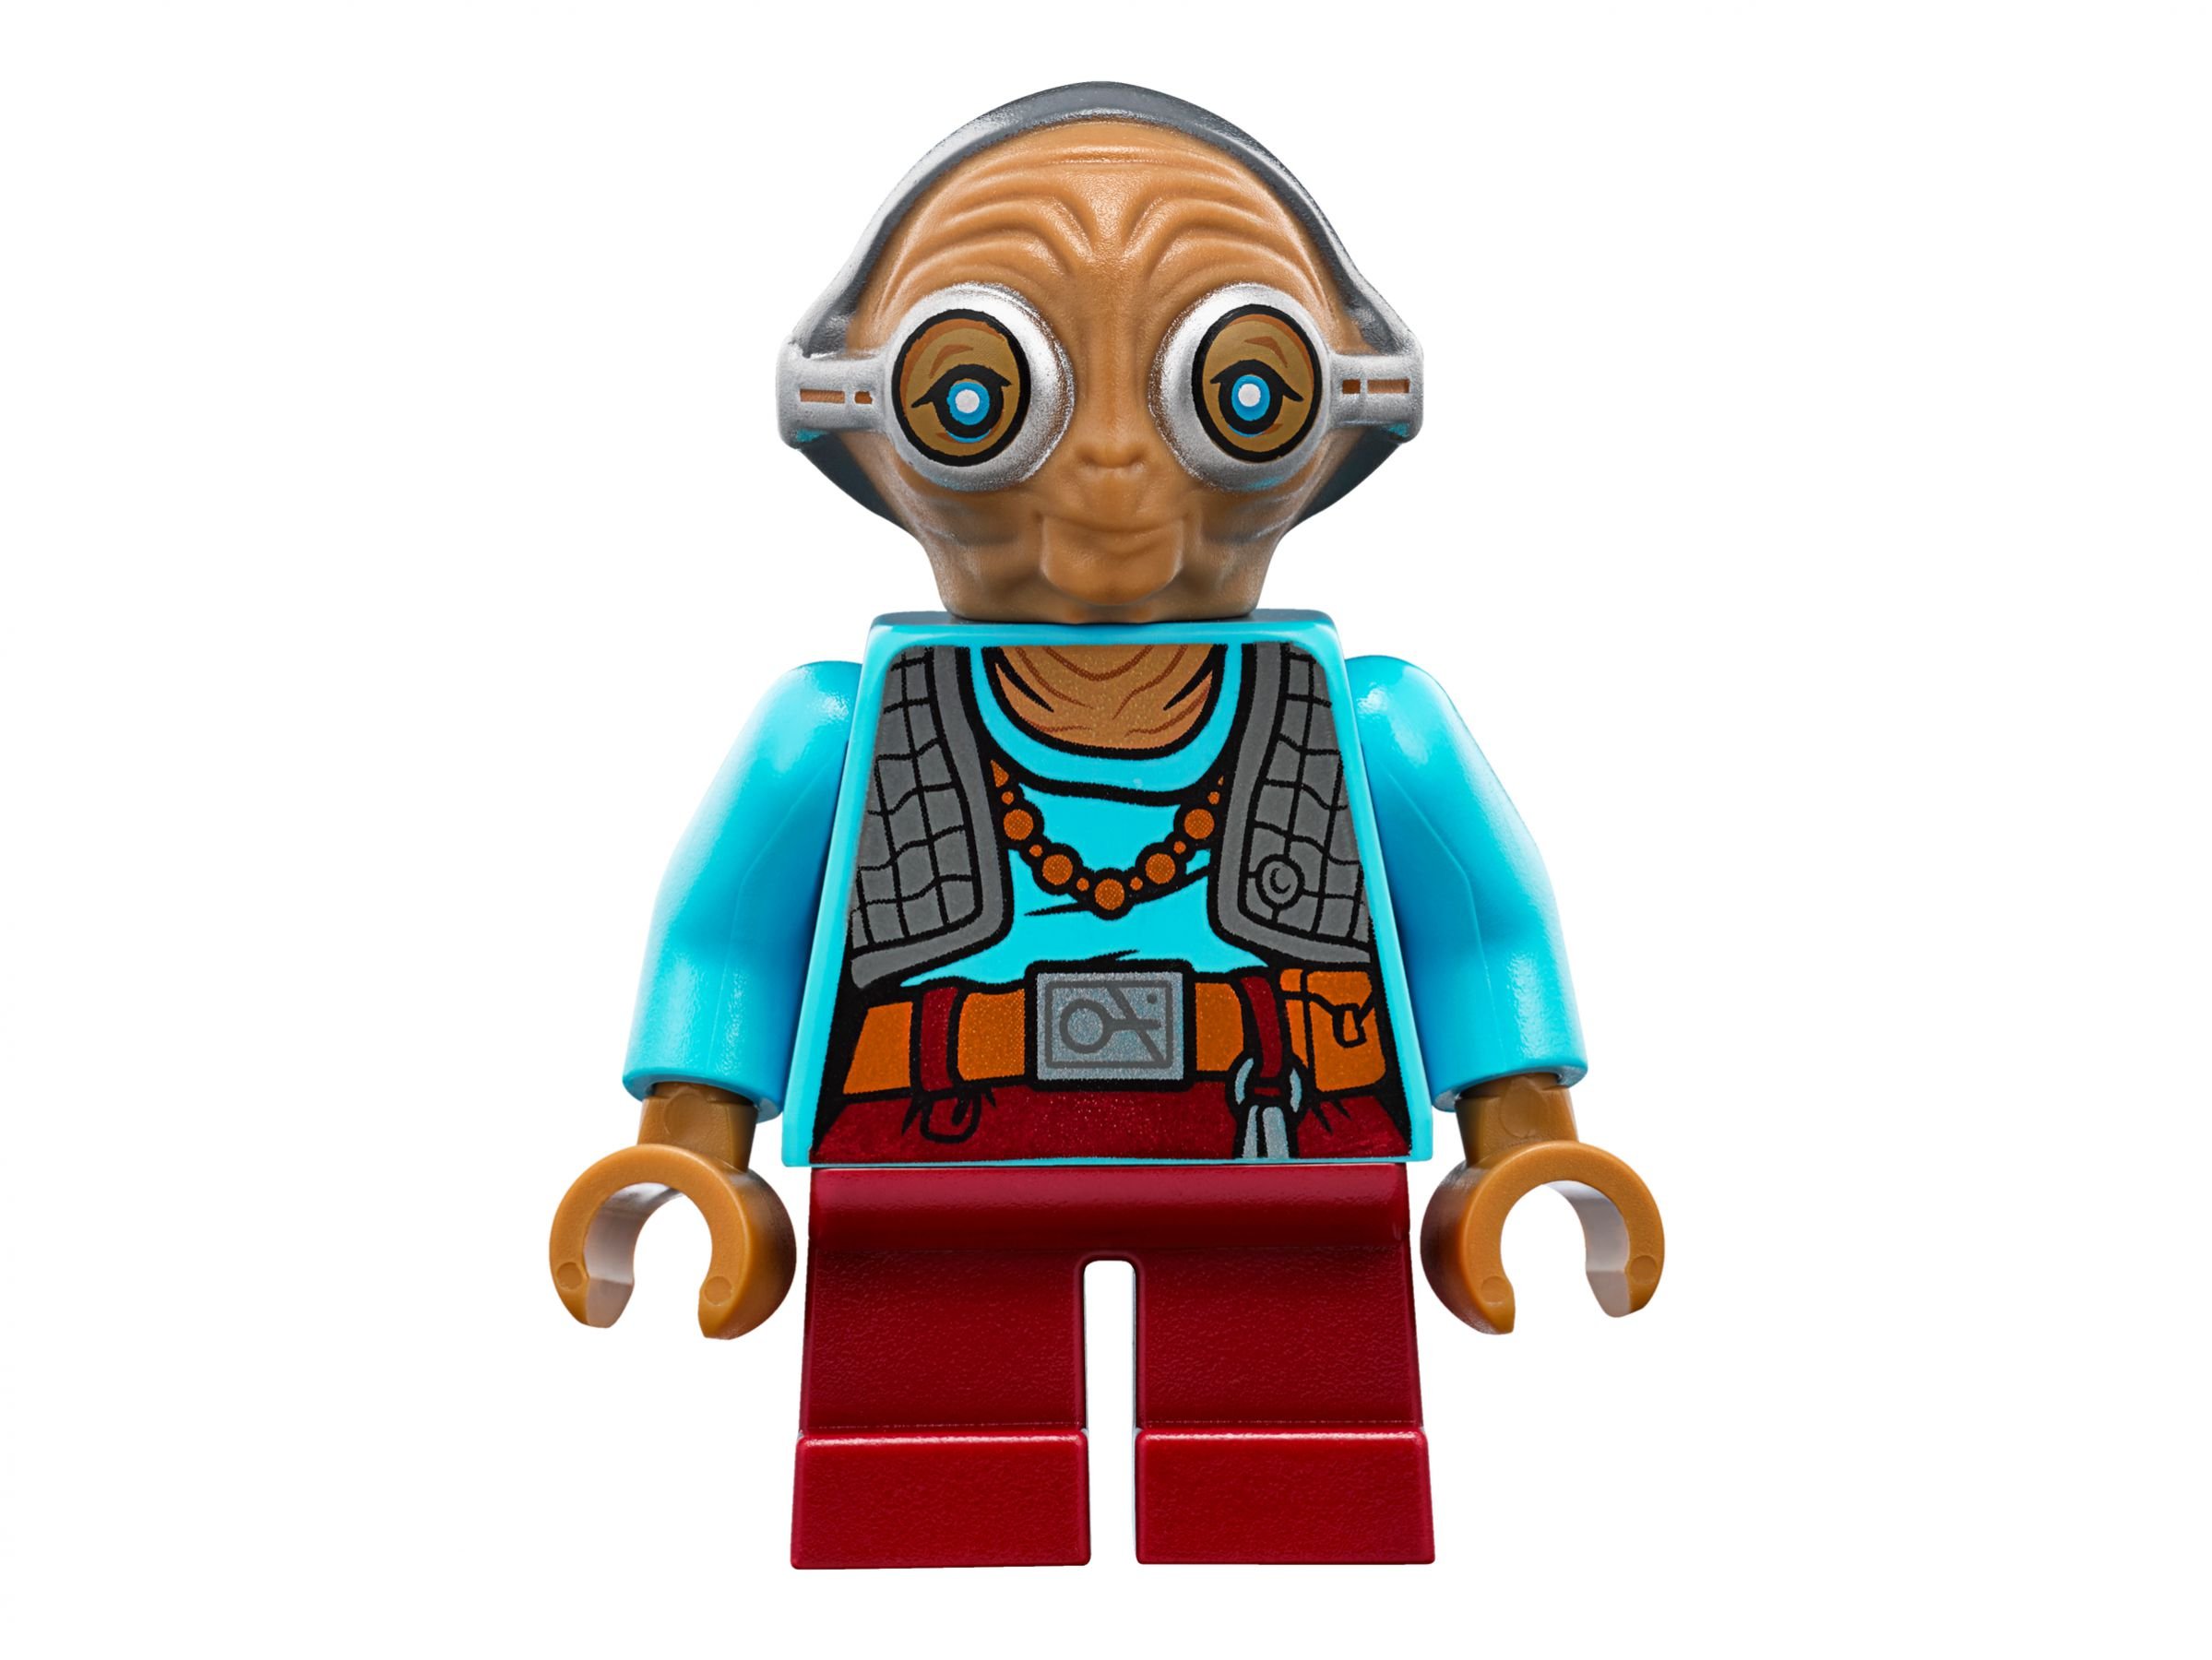 LEGO Star Wars 75139 Schlacht auf Takodana LEGO_75139_alt8.jpg